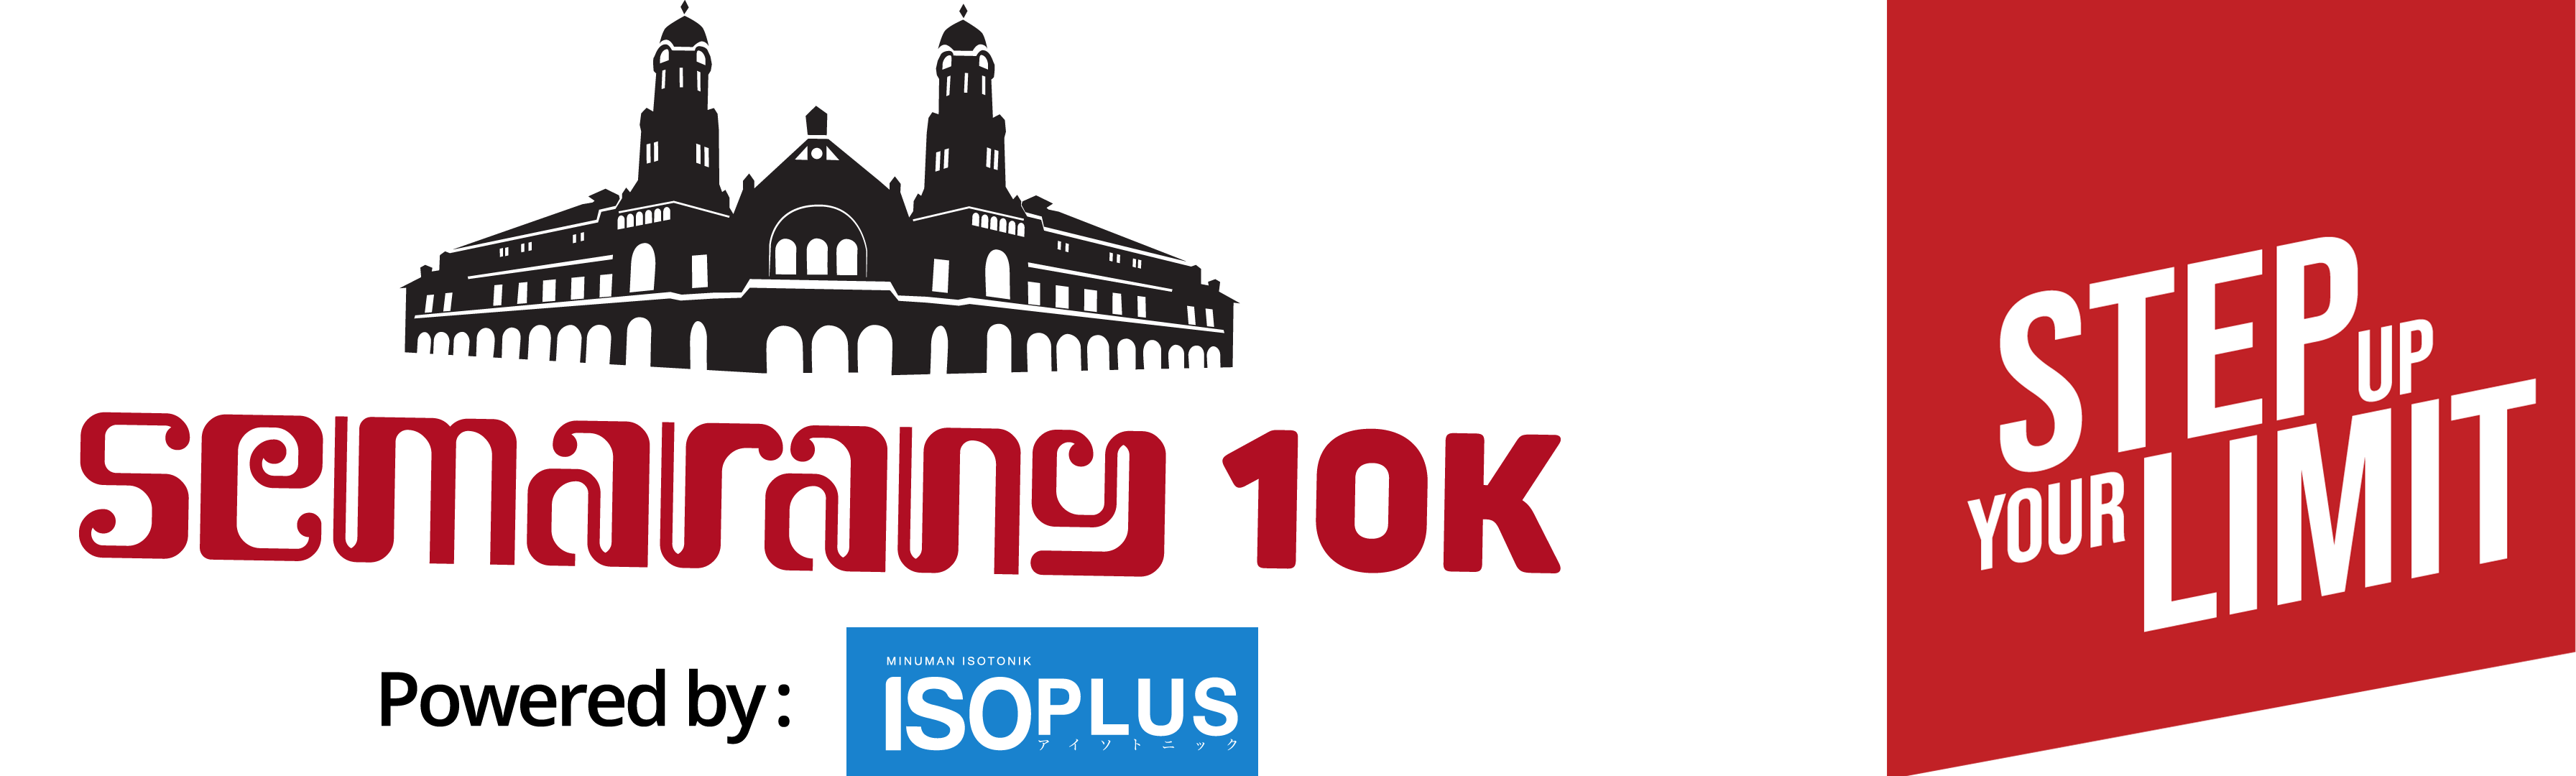 Semarang 10K Run